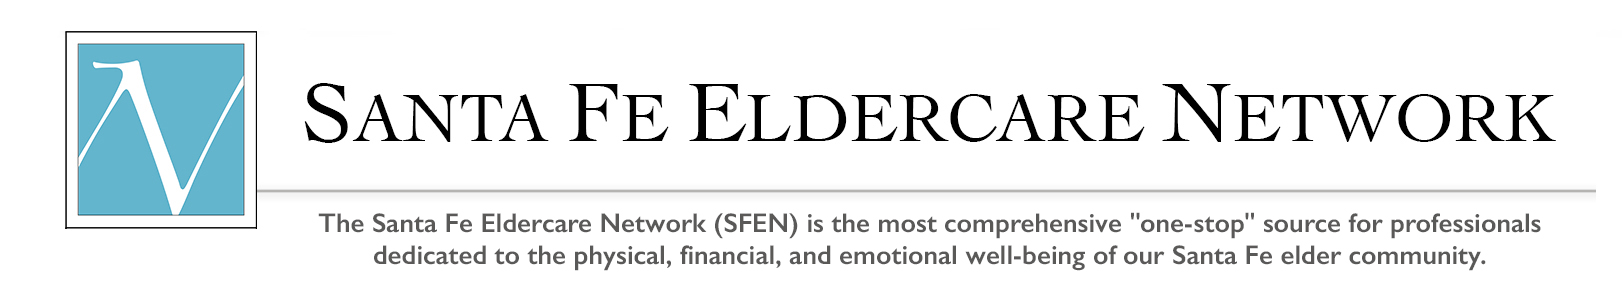 Santa Fe Eldercare Network